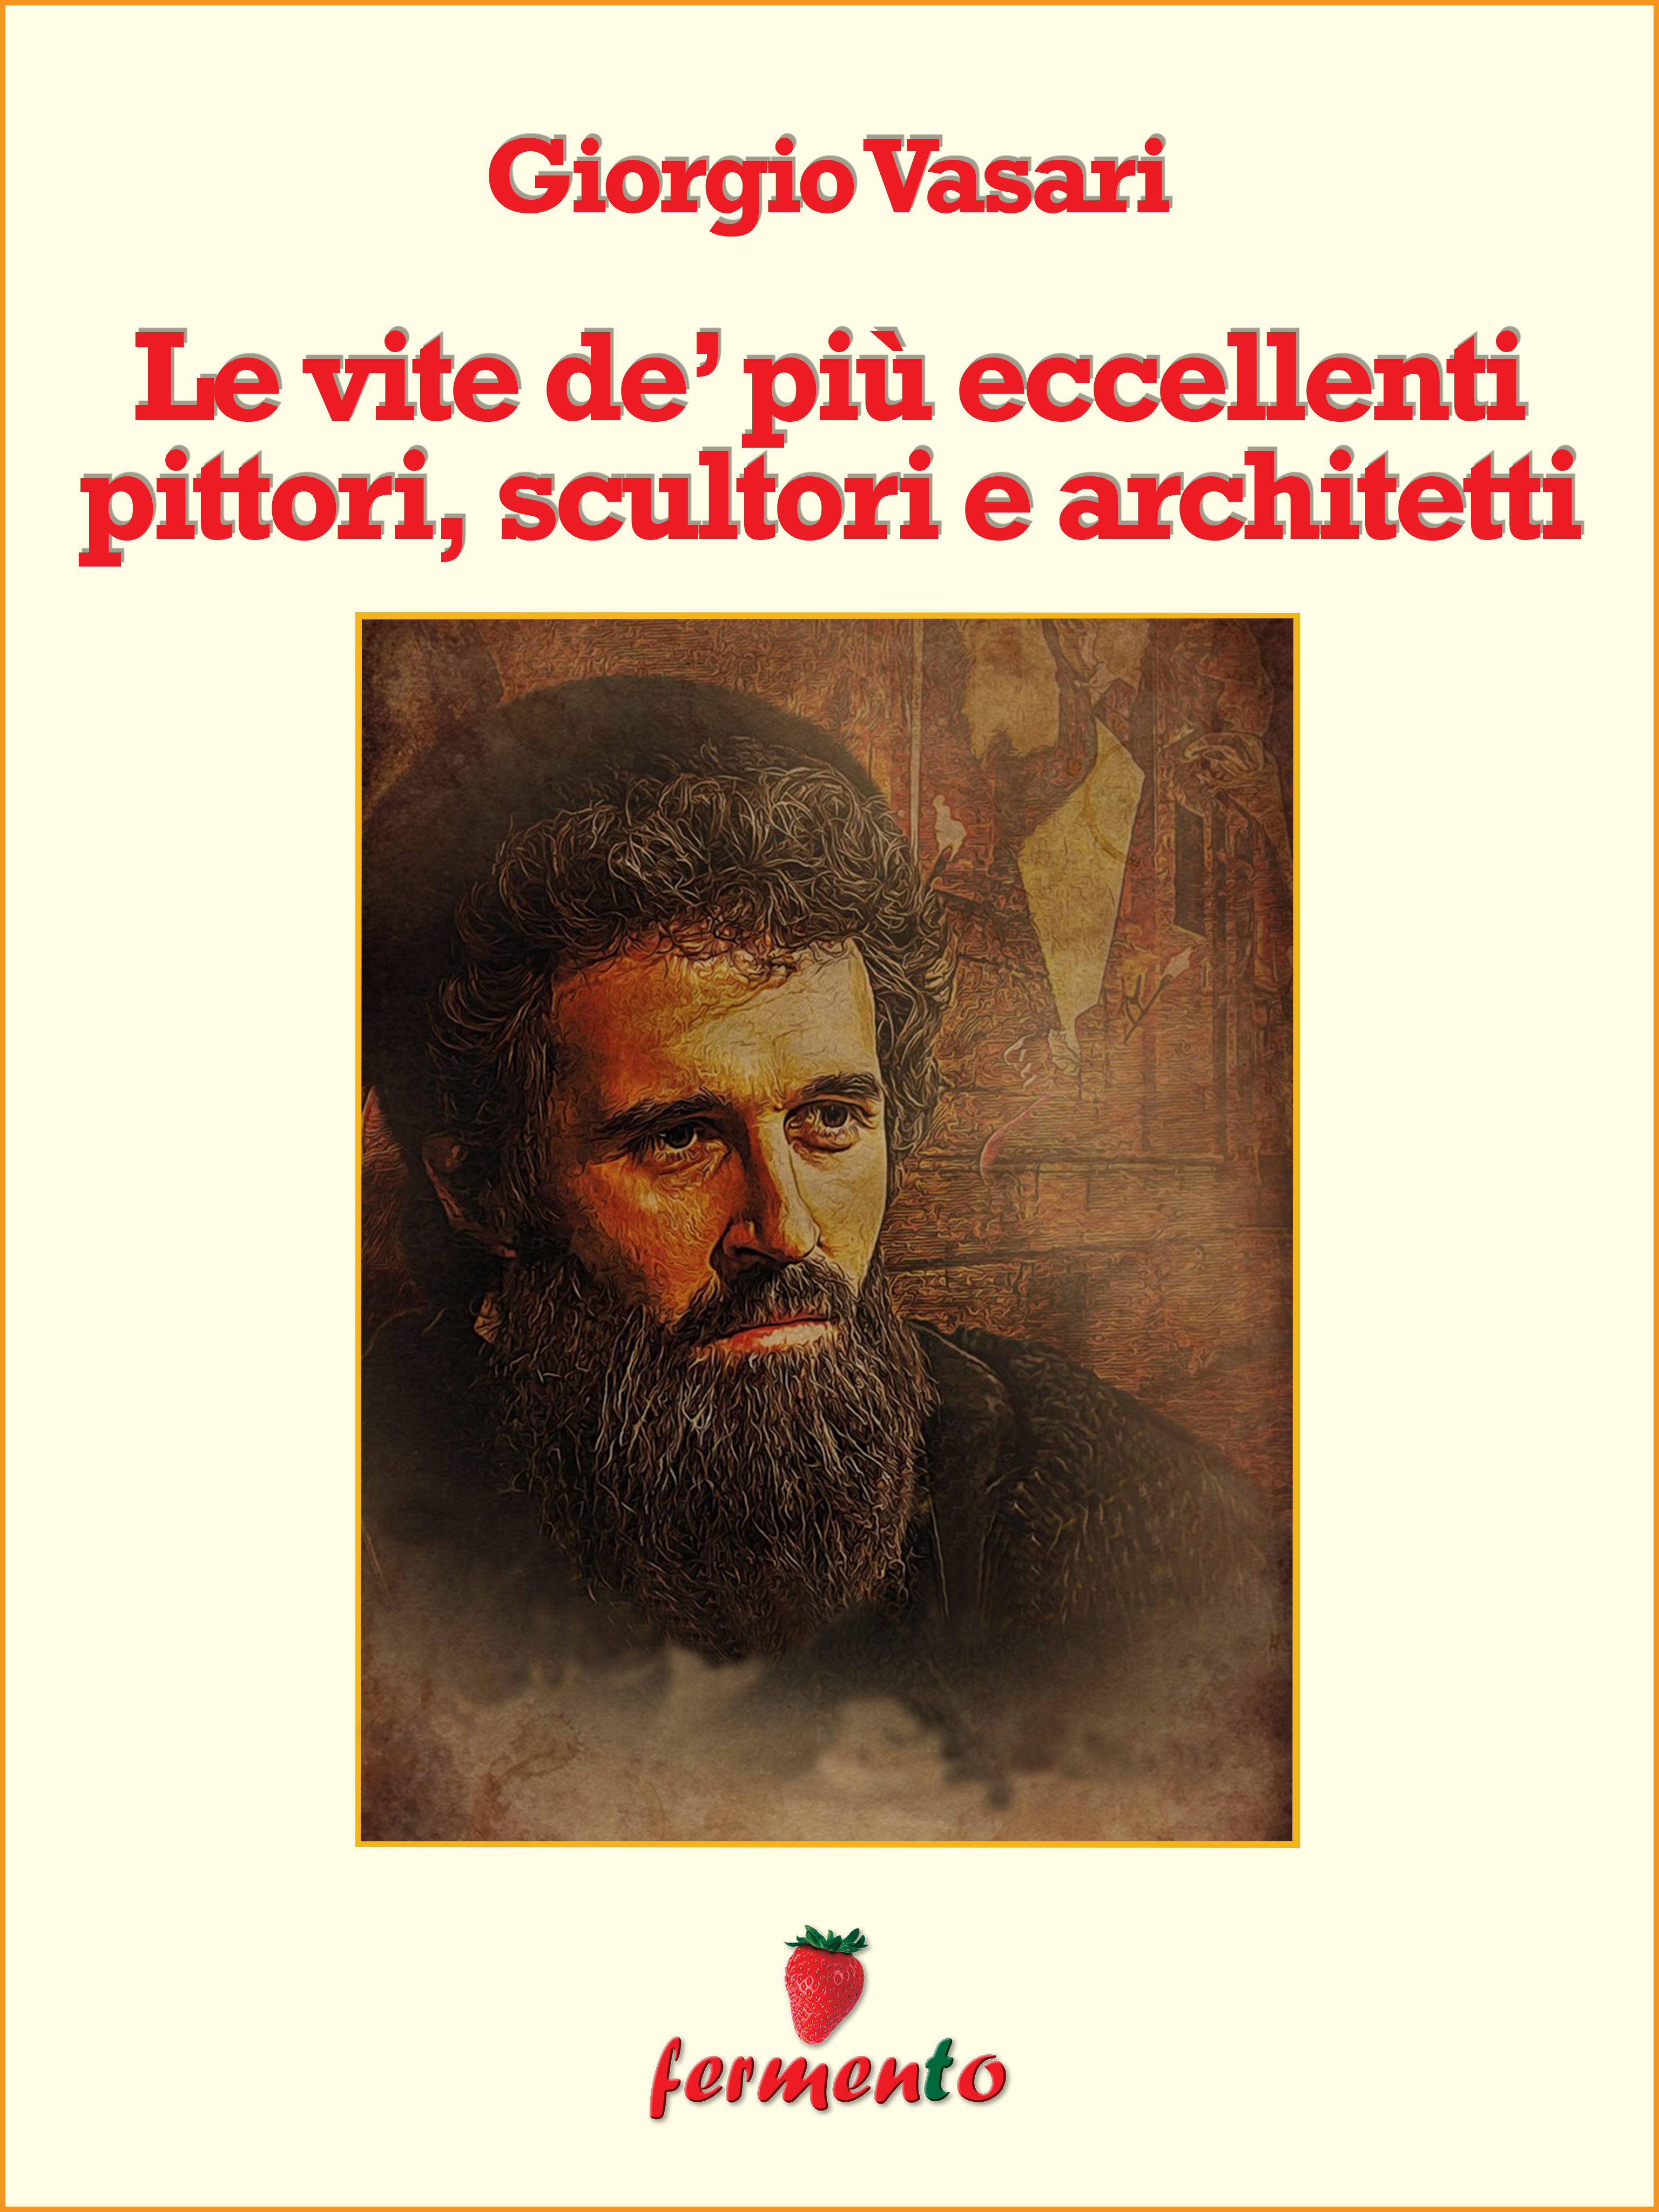 Giorgio Vasari: Le vite dei più eccellenti pittori, scultori e architetti, imprescindibile opera sull’arte